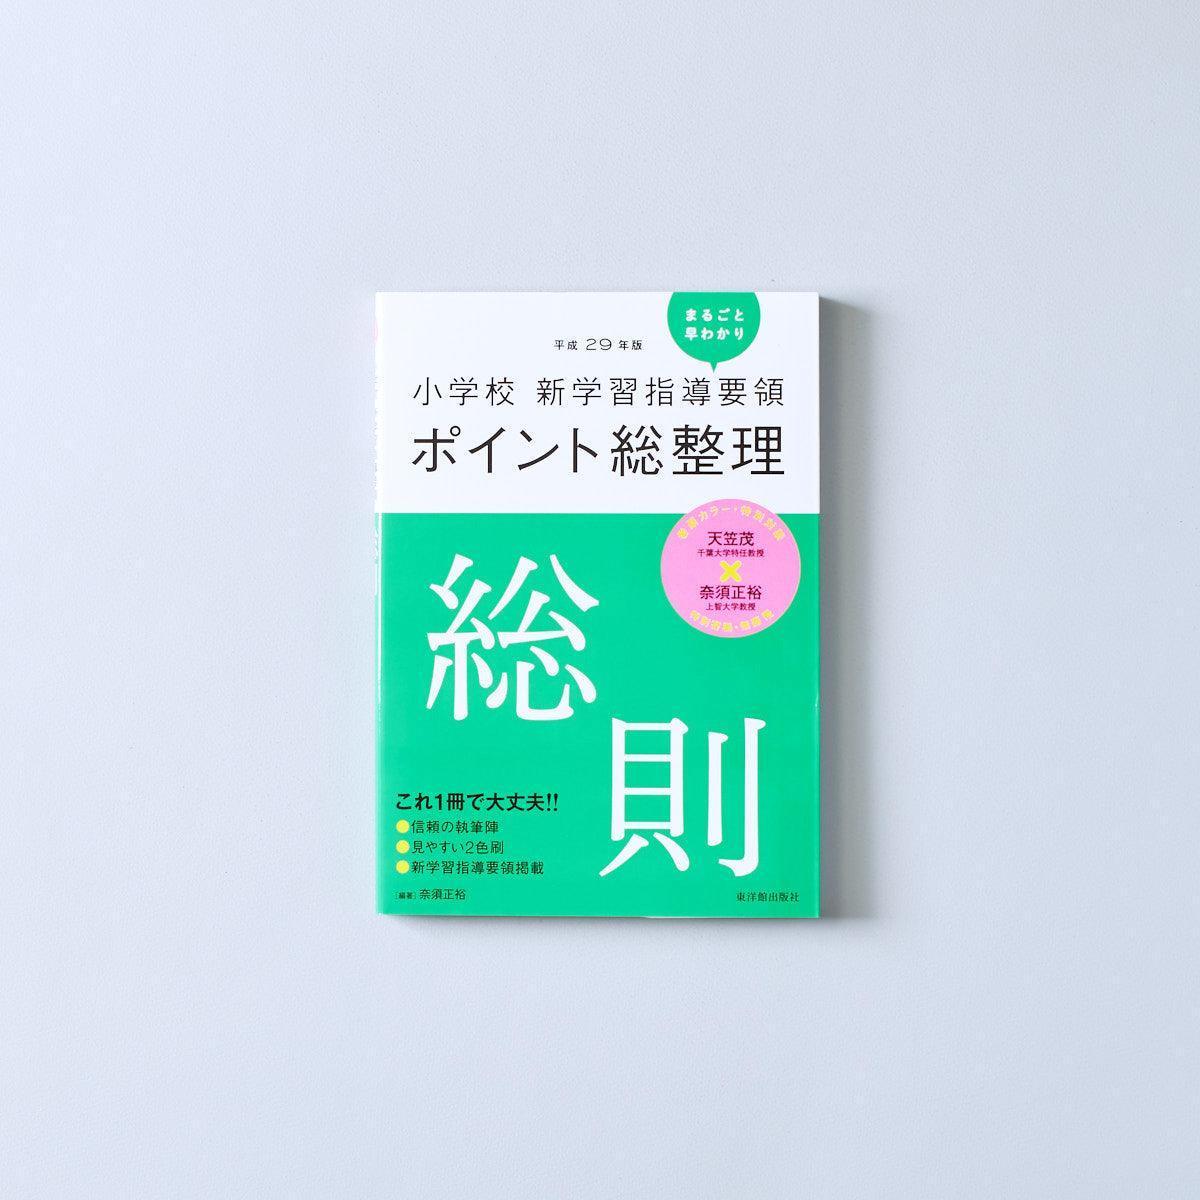 紀伊國屋数学叢書―日本数学会出版賞 受賞 - BookWeb Pro